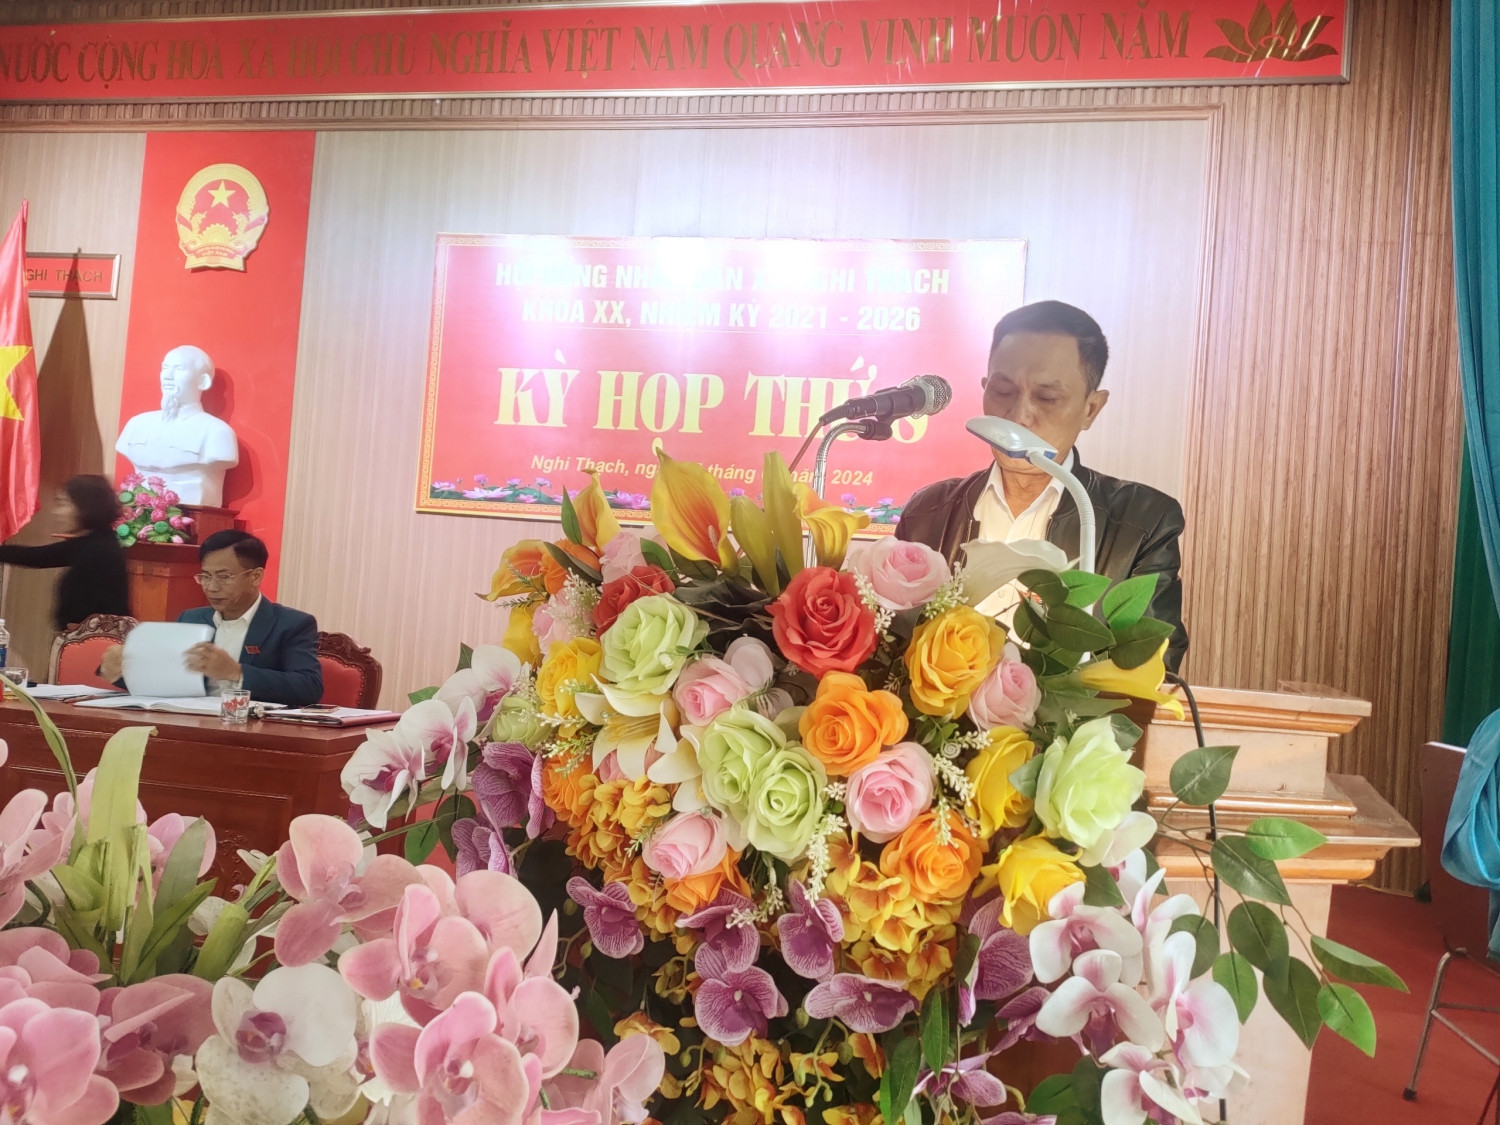 Ông Nguyễn Đình Bình - CT UBMTTQ xã thông báo hoạt động của UBMTTQ xã tham gia xây dựng chính quyền và 1 số ý kiến, kiến nghị đối với HĐND, UBND và đại biểu HĐND xã